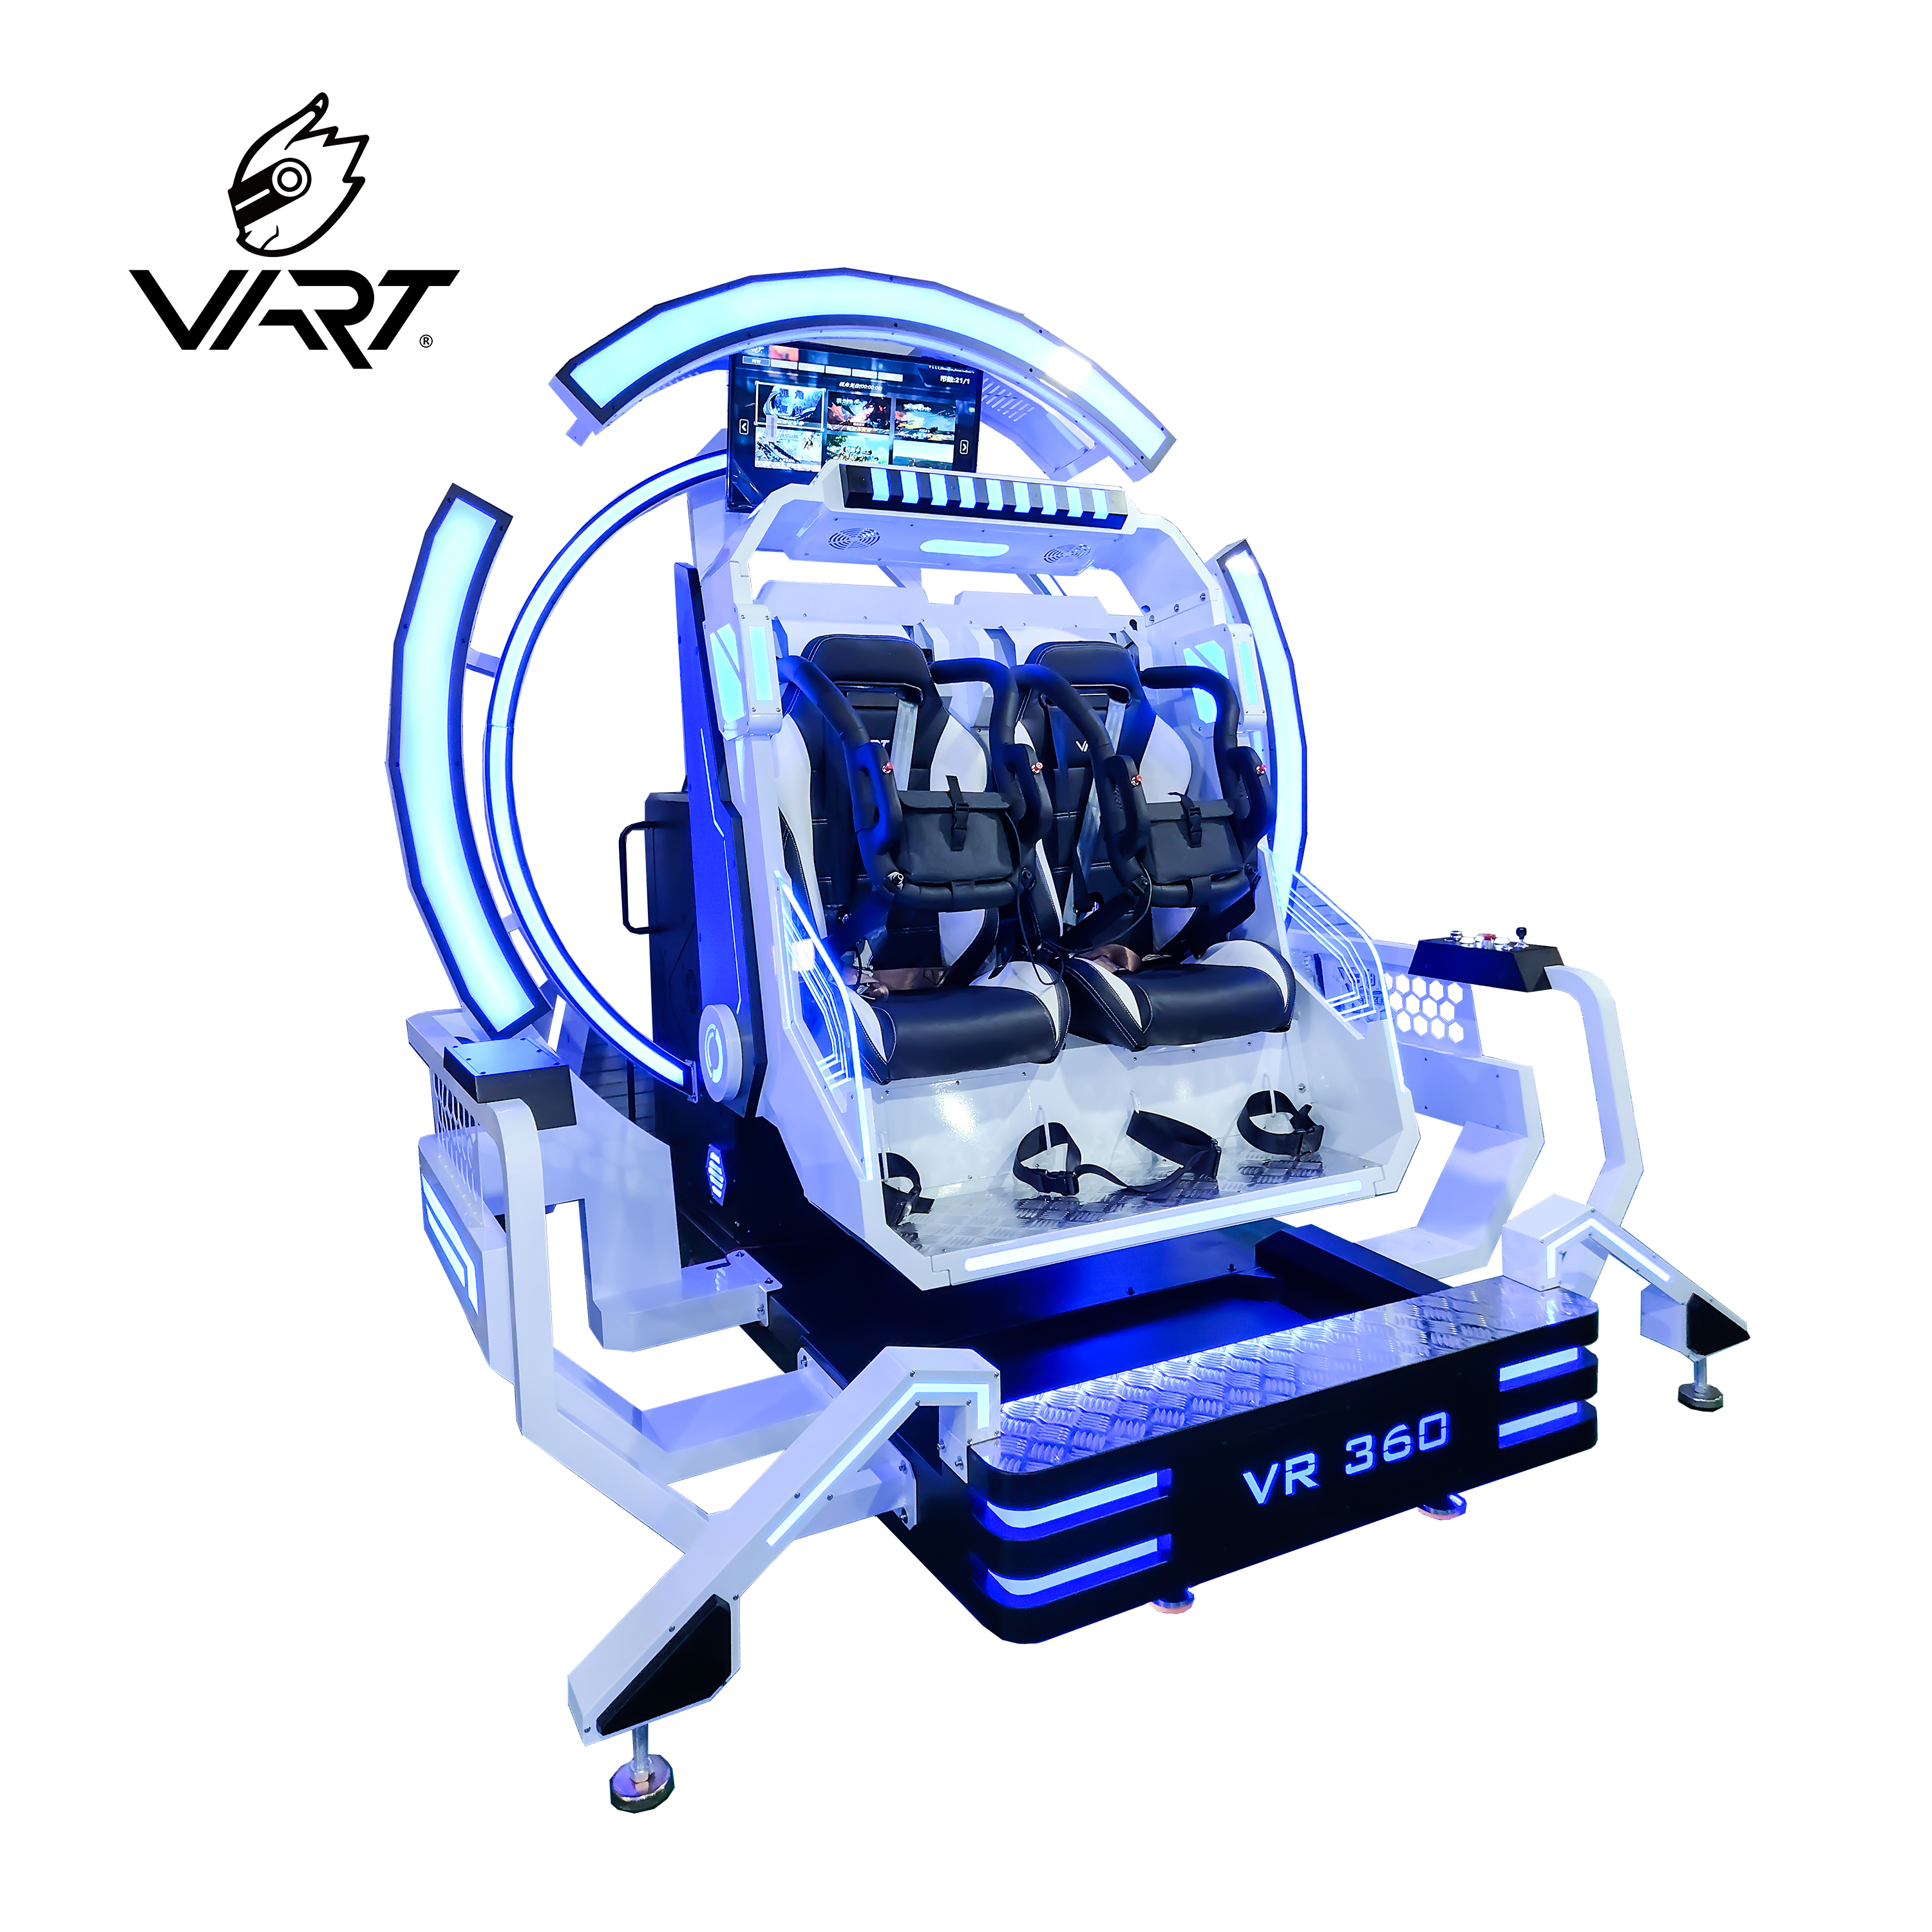 Ghế VART 2 Chỗ VR 360